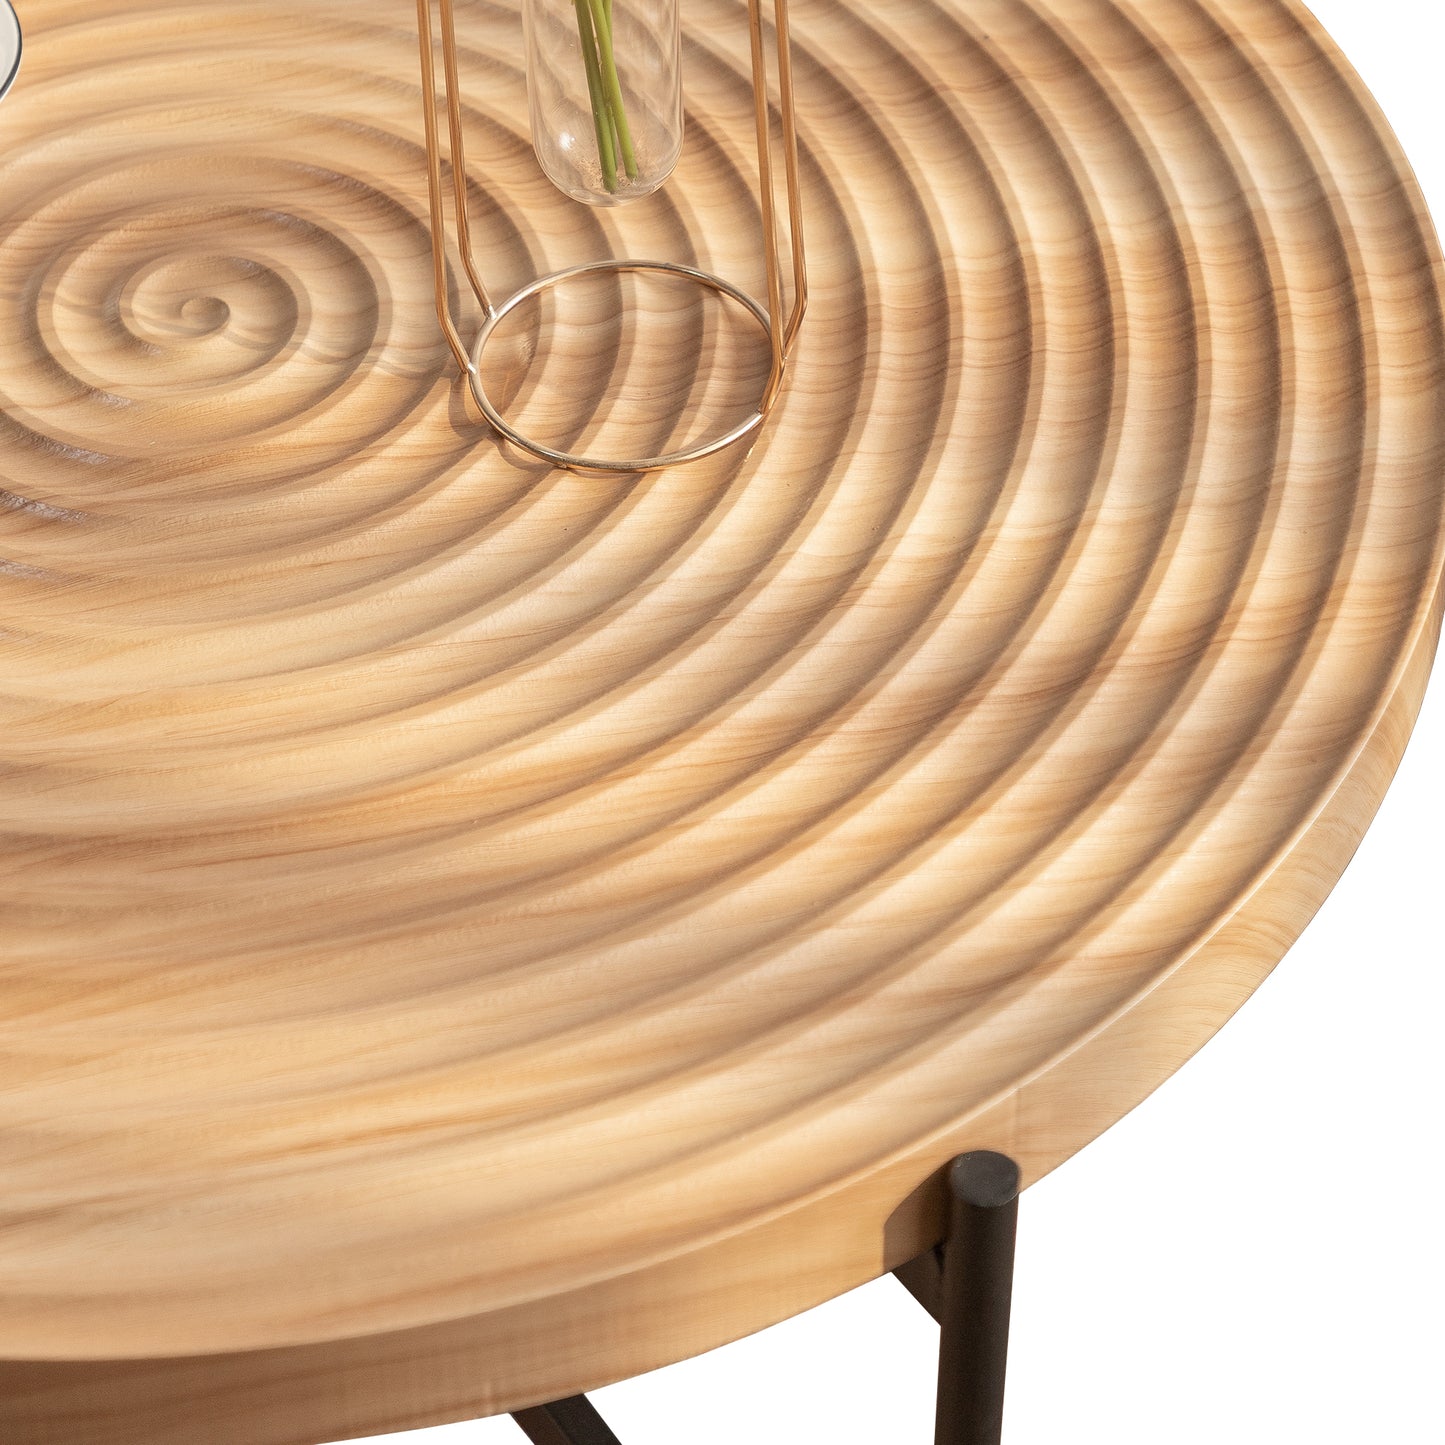 Textured Spiral Design Round Coffee Table , 33"